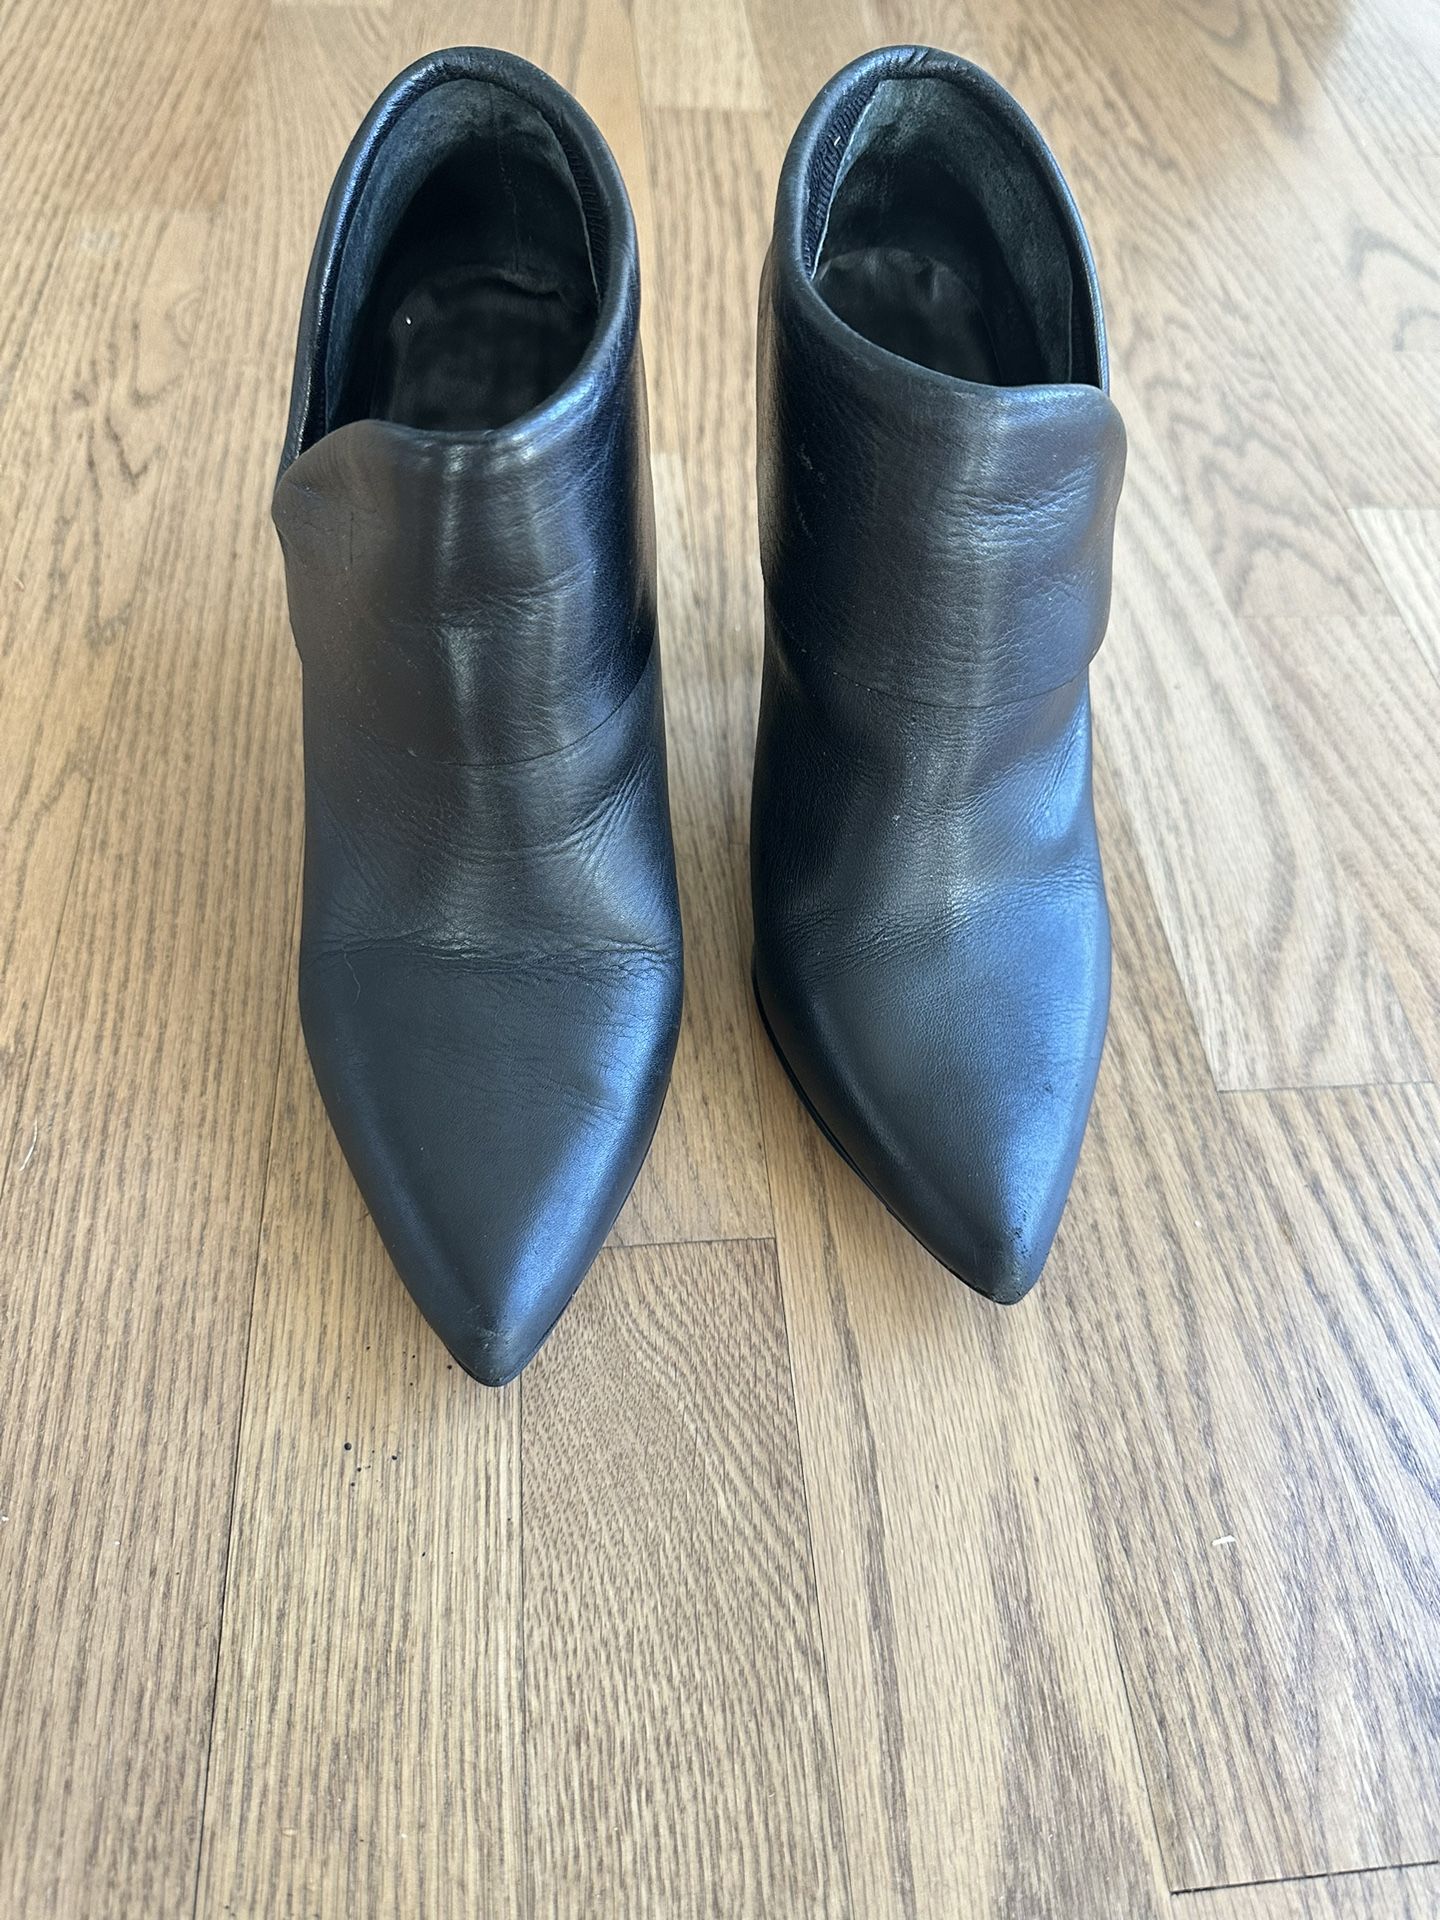 Women’s Winter Boots, Size 9 by Aldo